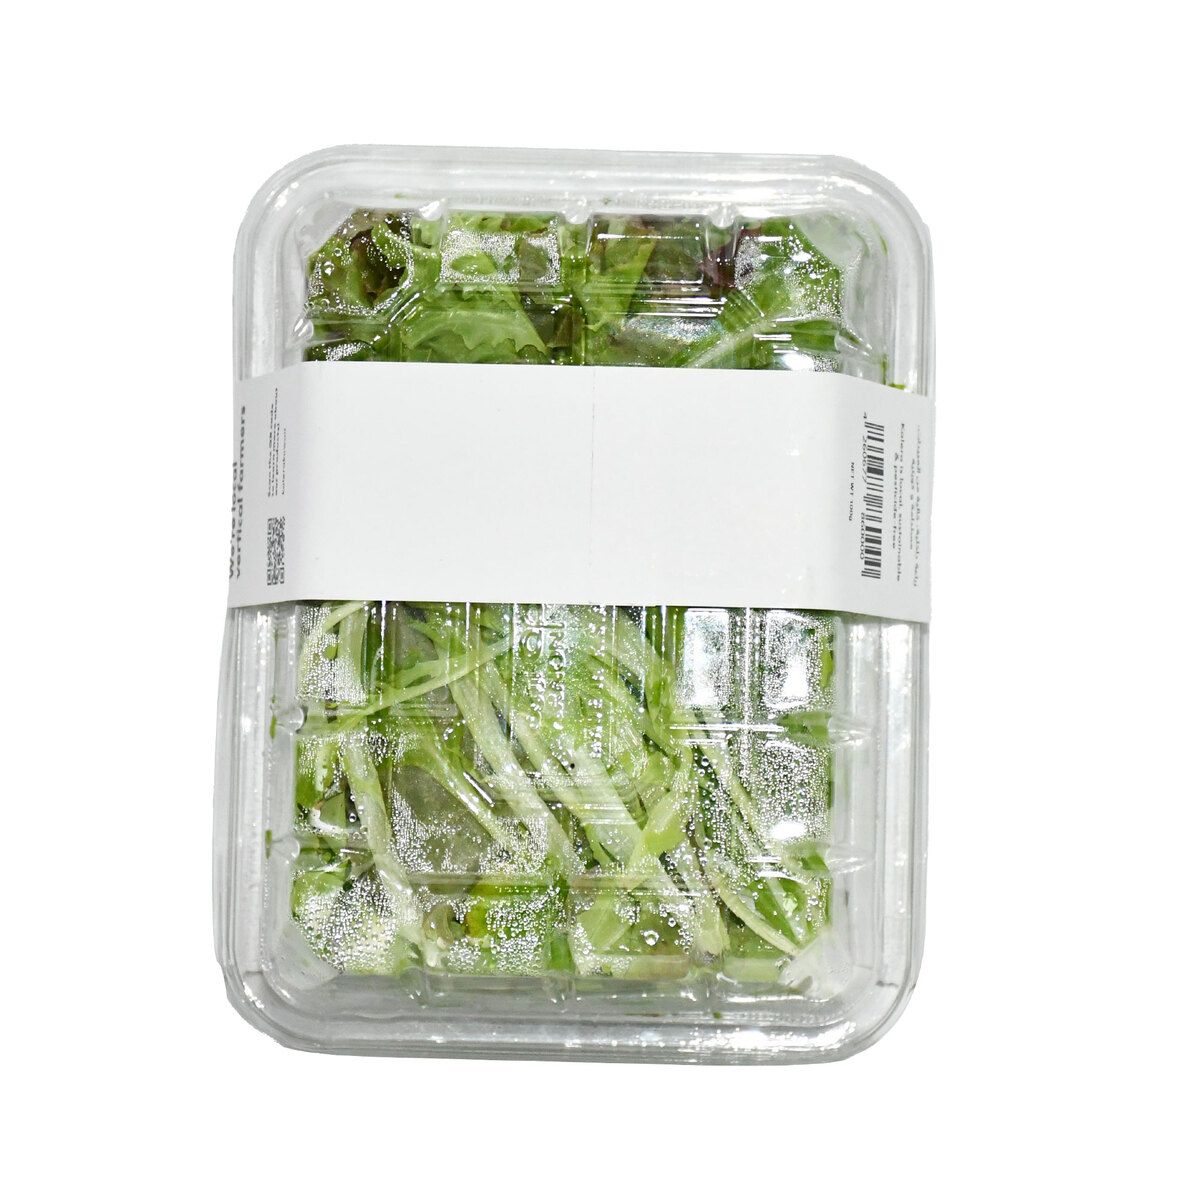 Kalera Salad Mix 100 g